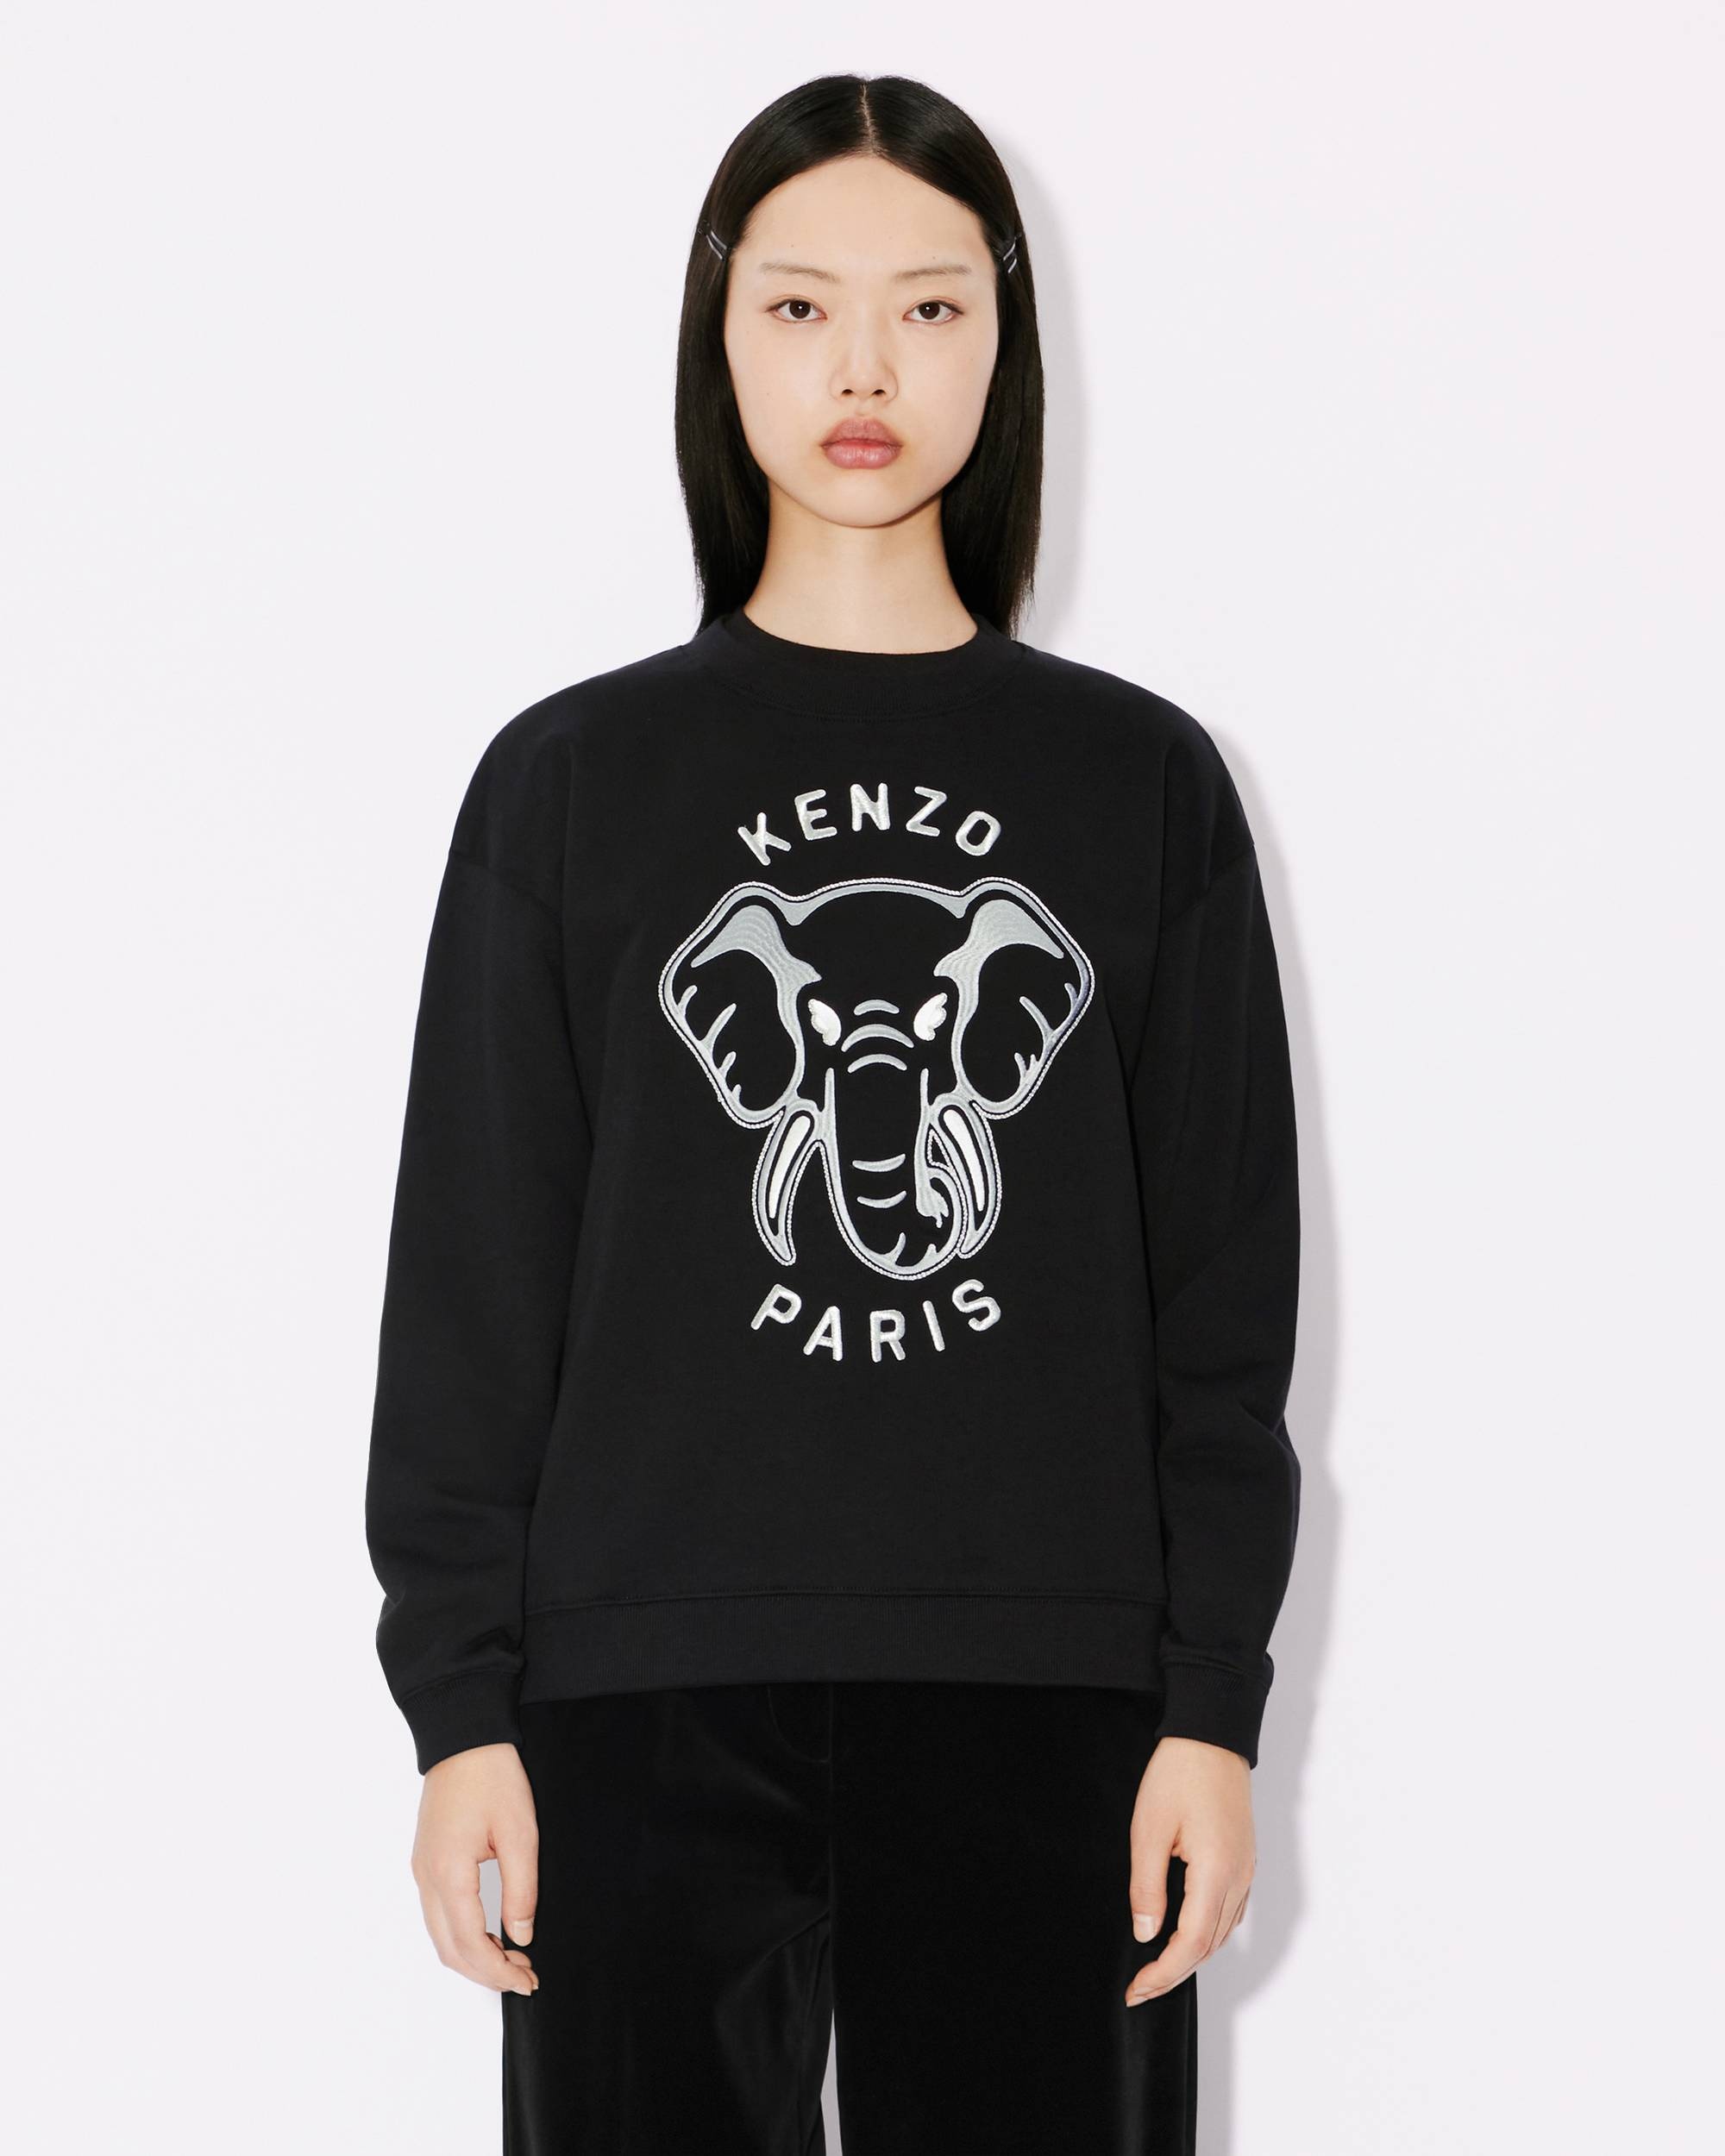 'KENZO' embroidered sweatshirt - 3